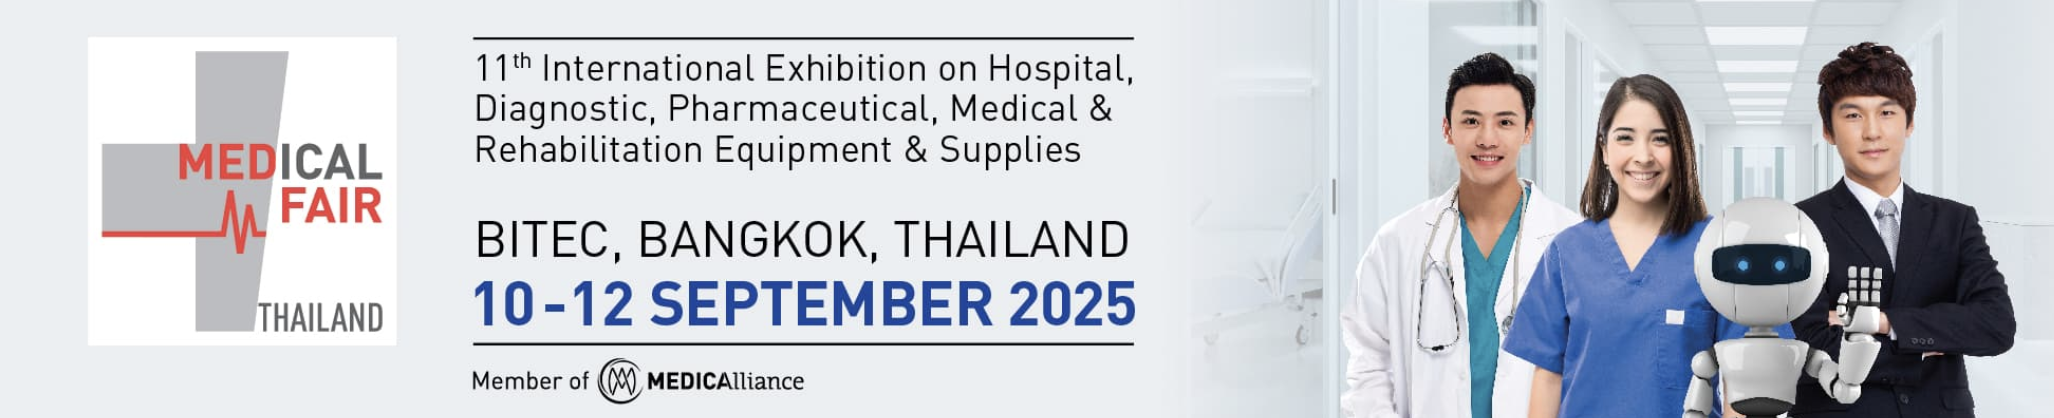 Medical Fair Asia 2025 Bangkok 10 - 12 September 2025 กิจกรรมงานแฟร์ด้านสุขภาพการแพทย์ ในไทย ปี 2567